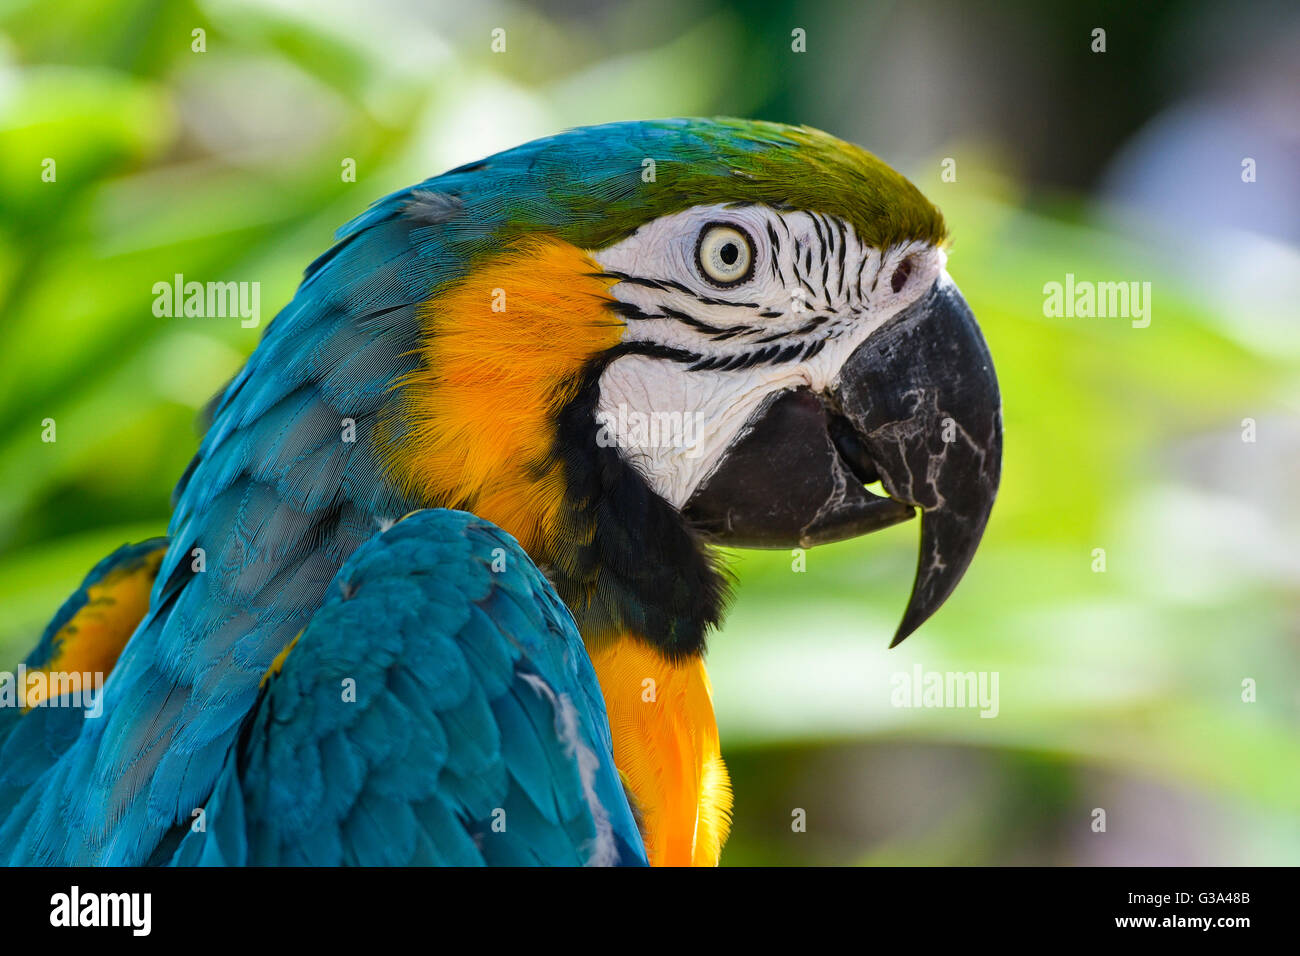 Macaw parrot portrait Stock Photo